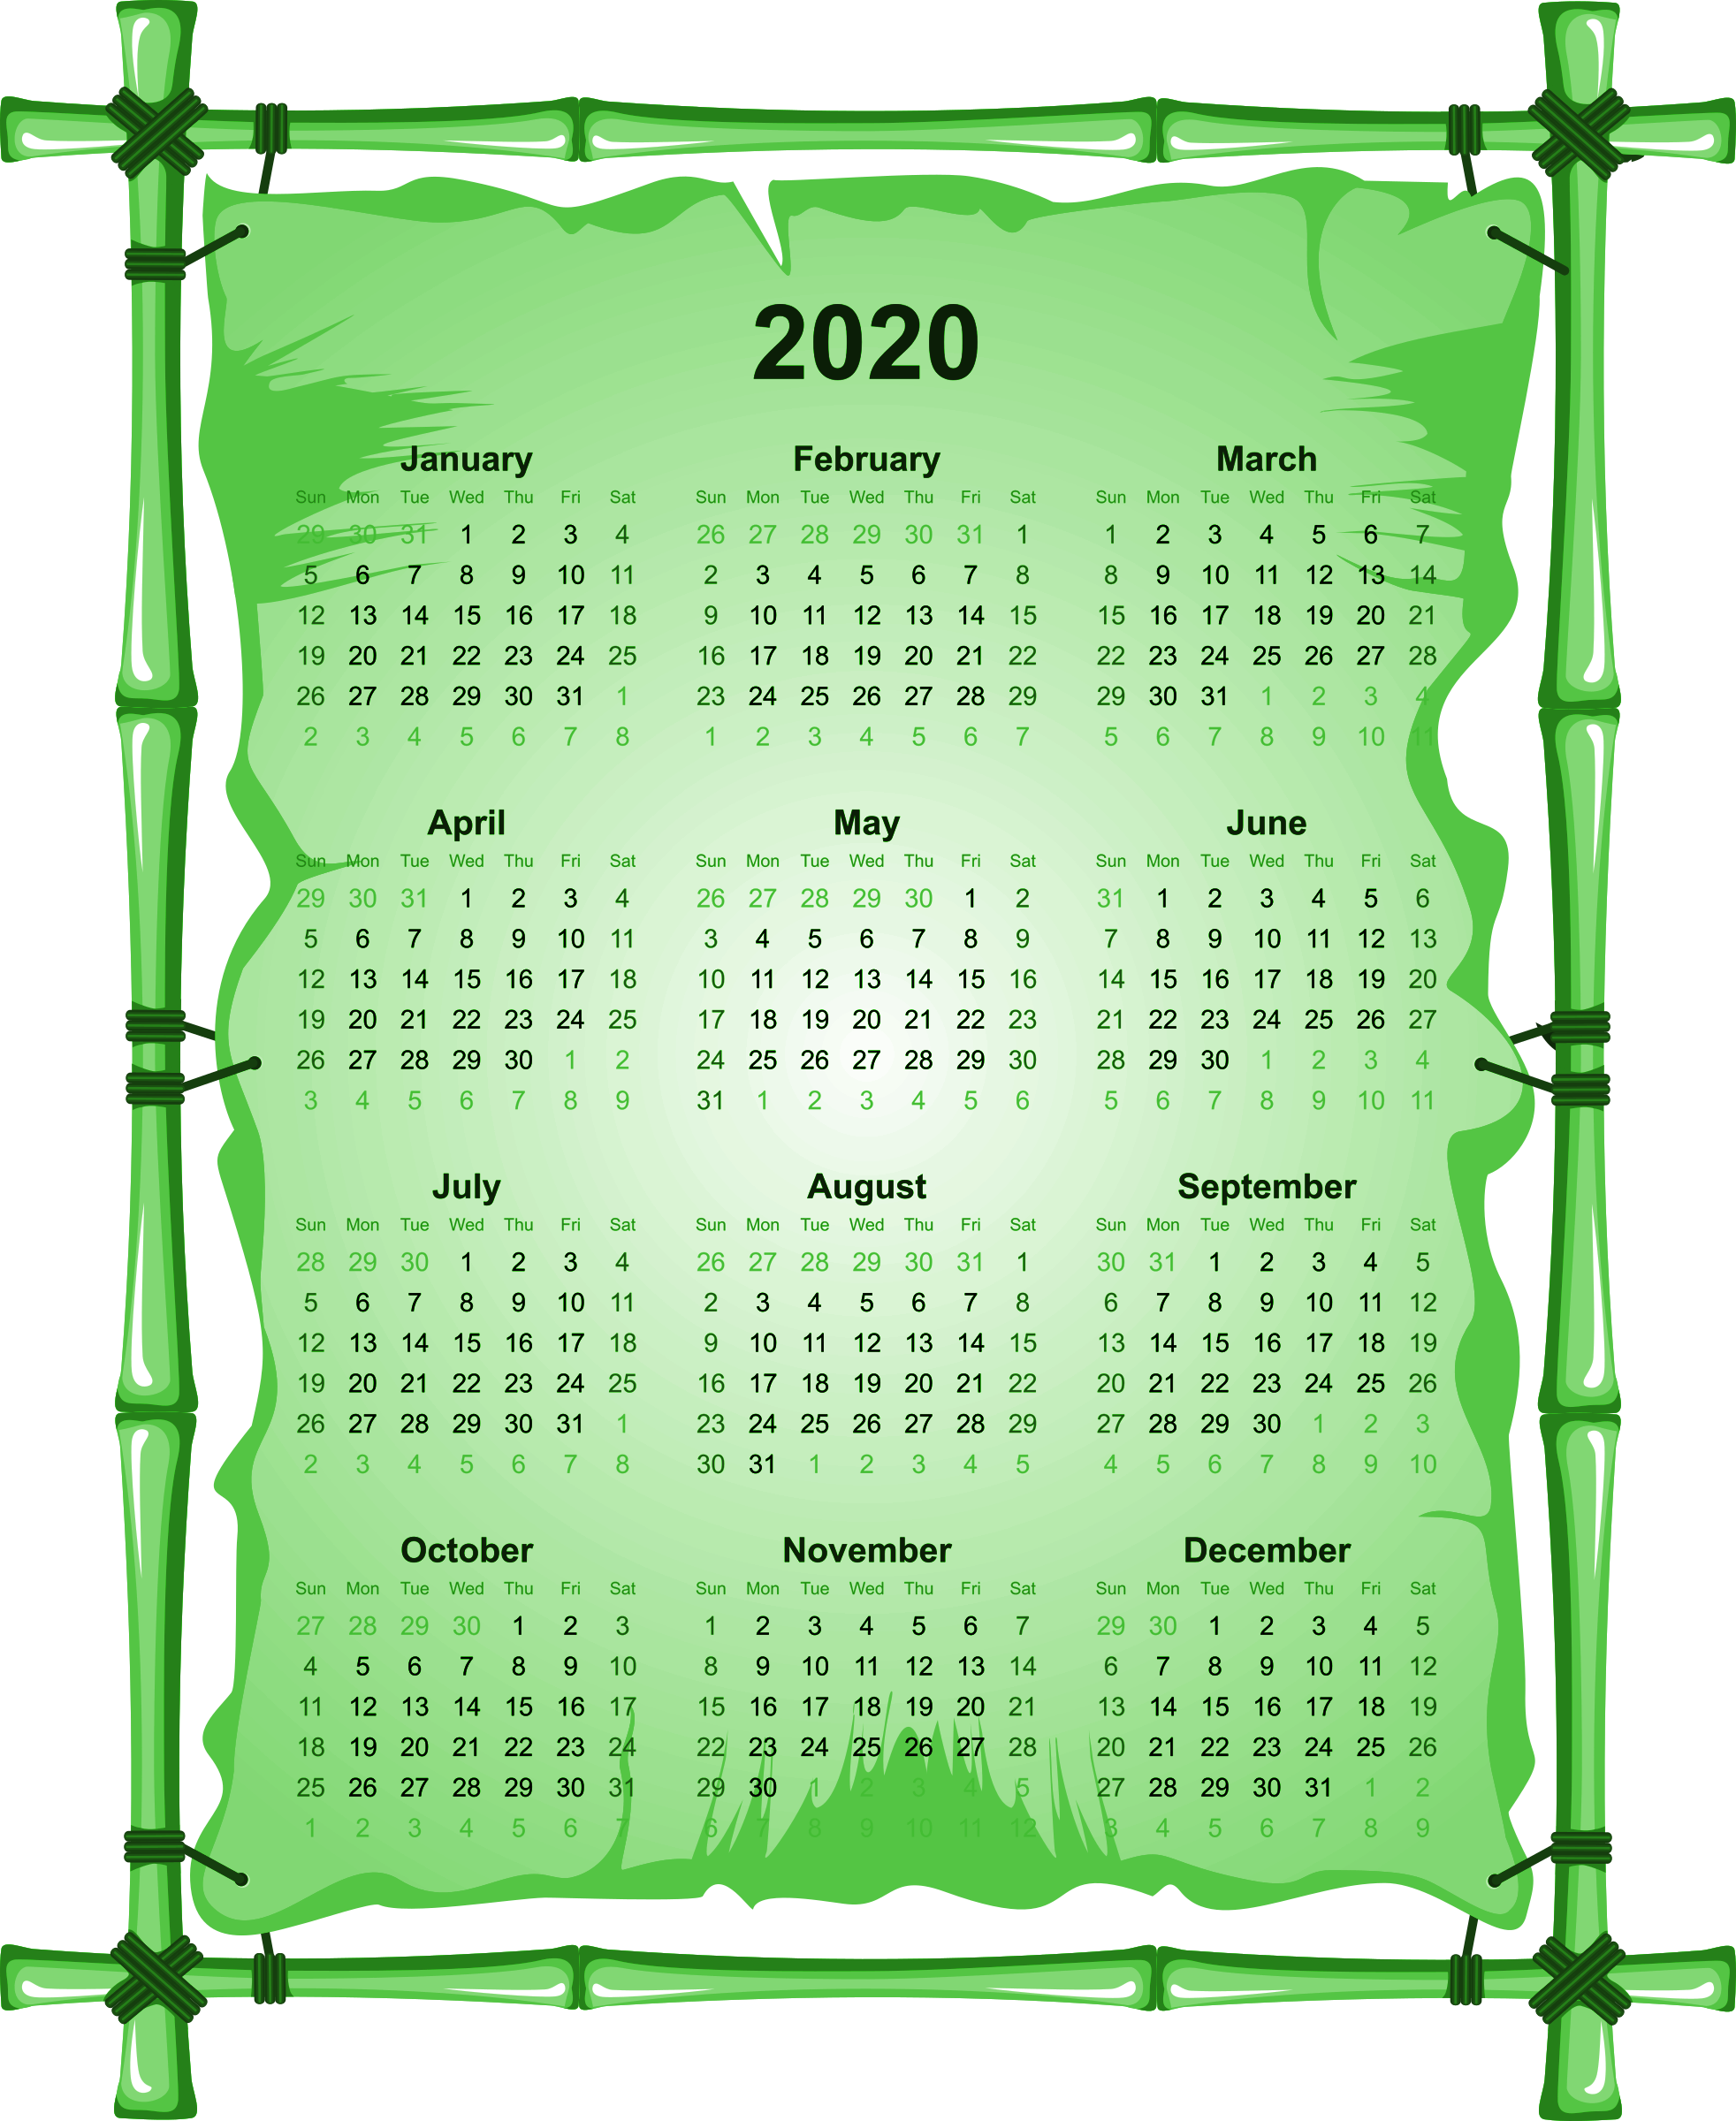 2020 calendrier Télécharger limage PNG Transparente